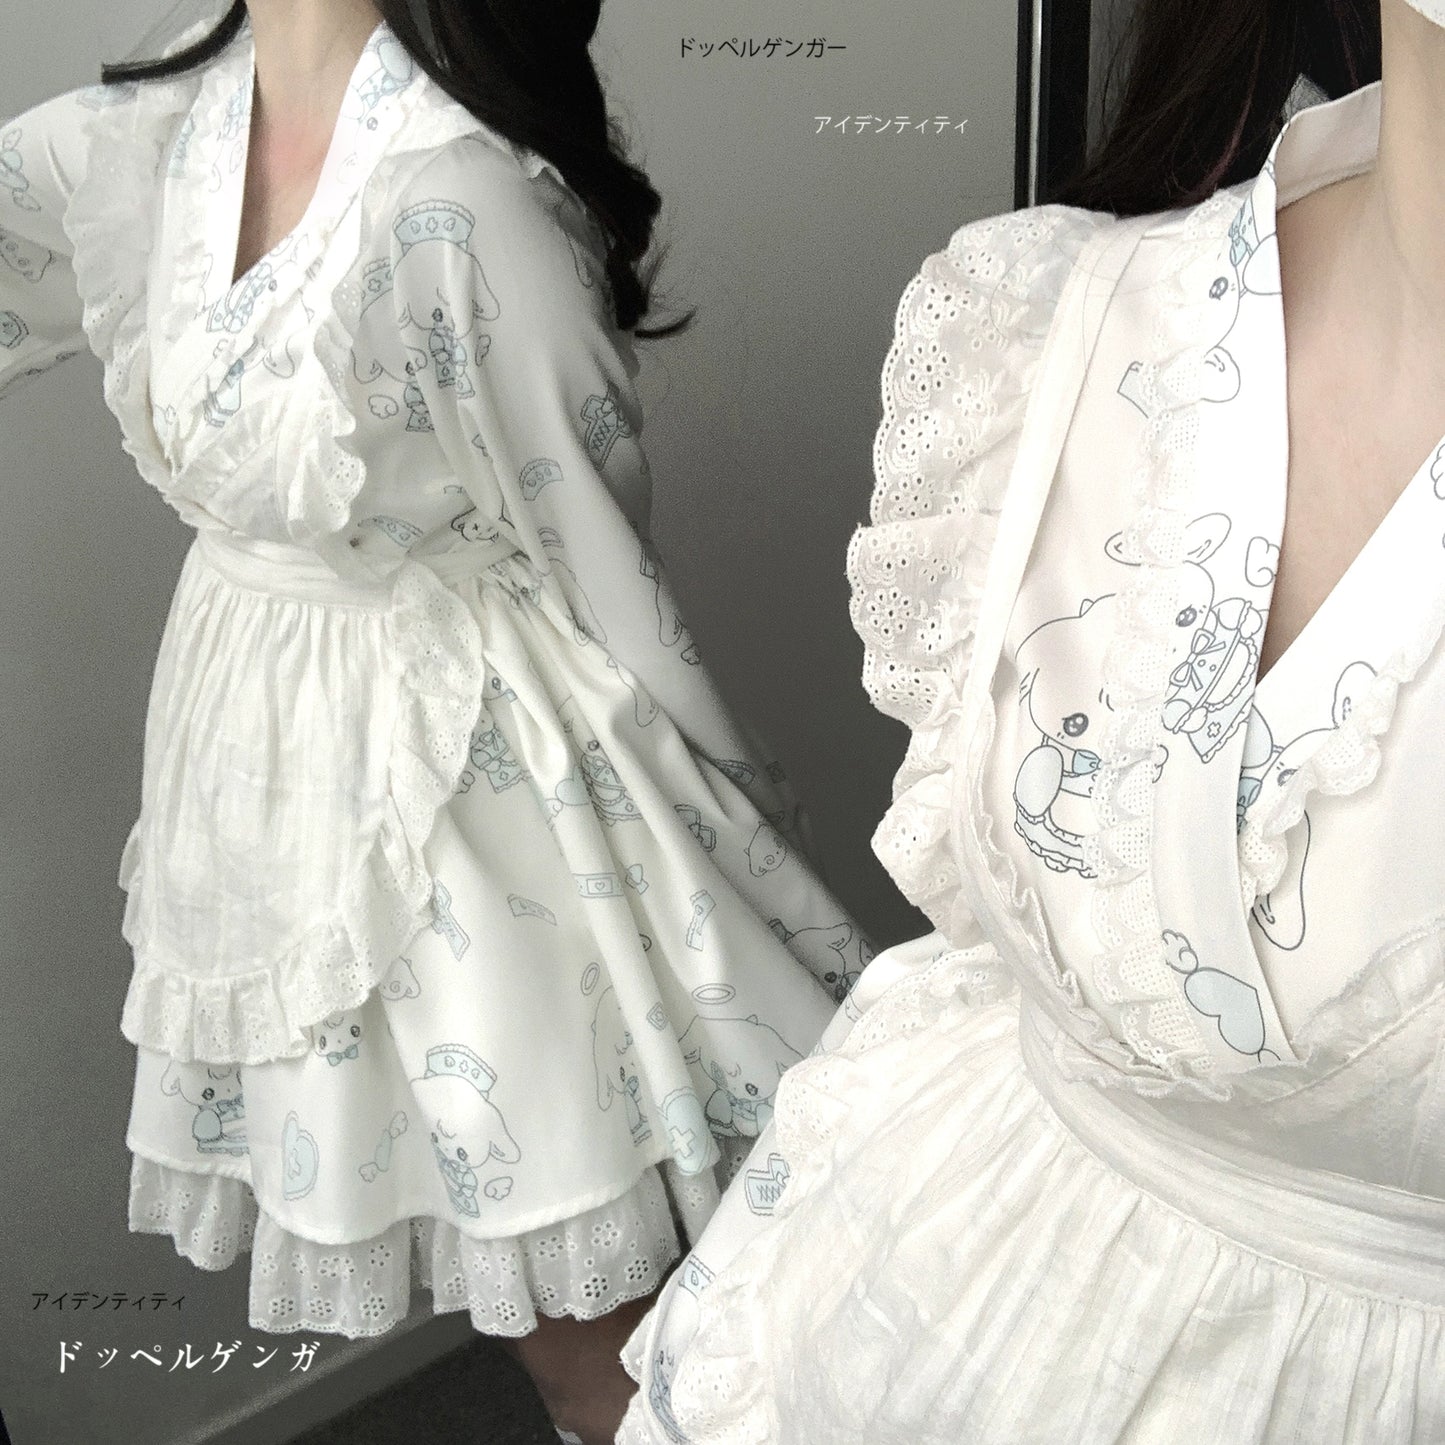 Tenshi Kaiwai Patchwork Skirt Kimono Top White Apron Three-Piece Set 36786:536644